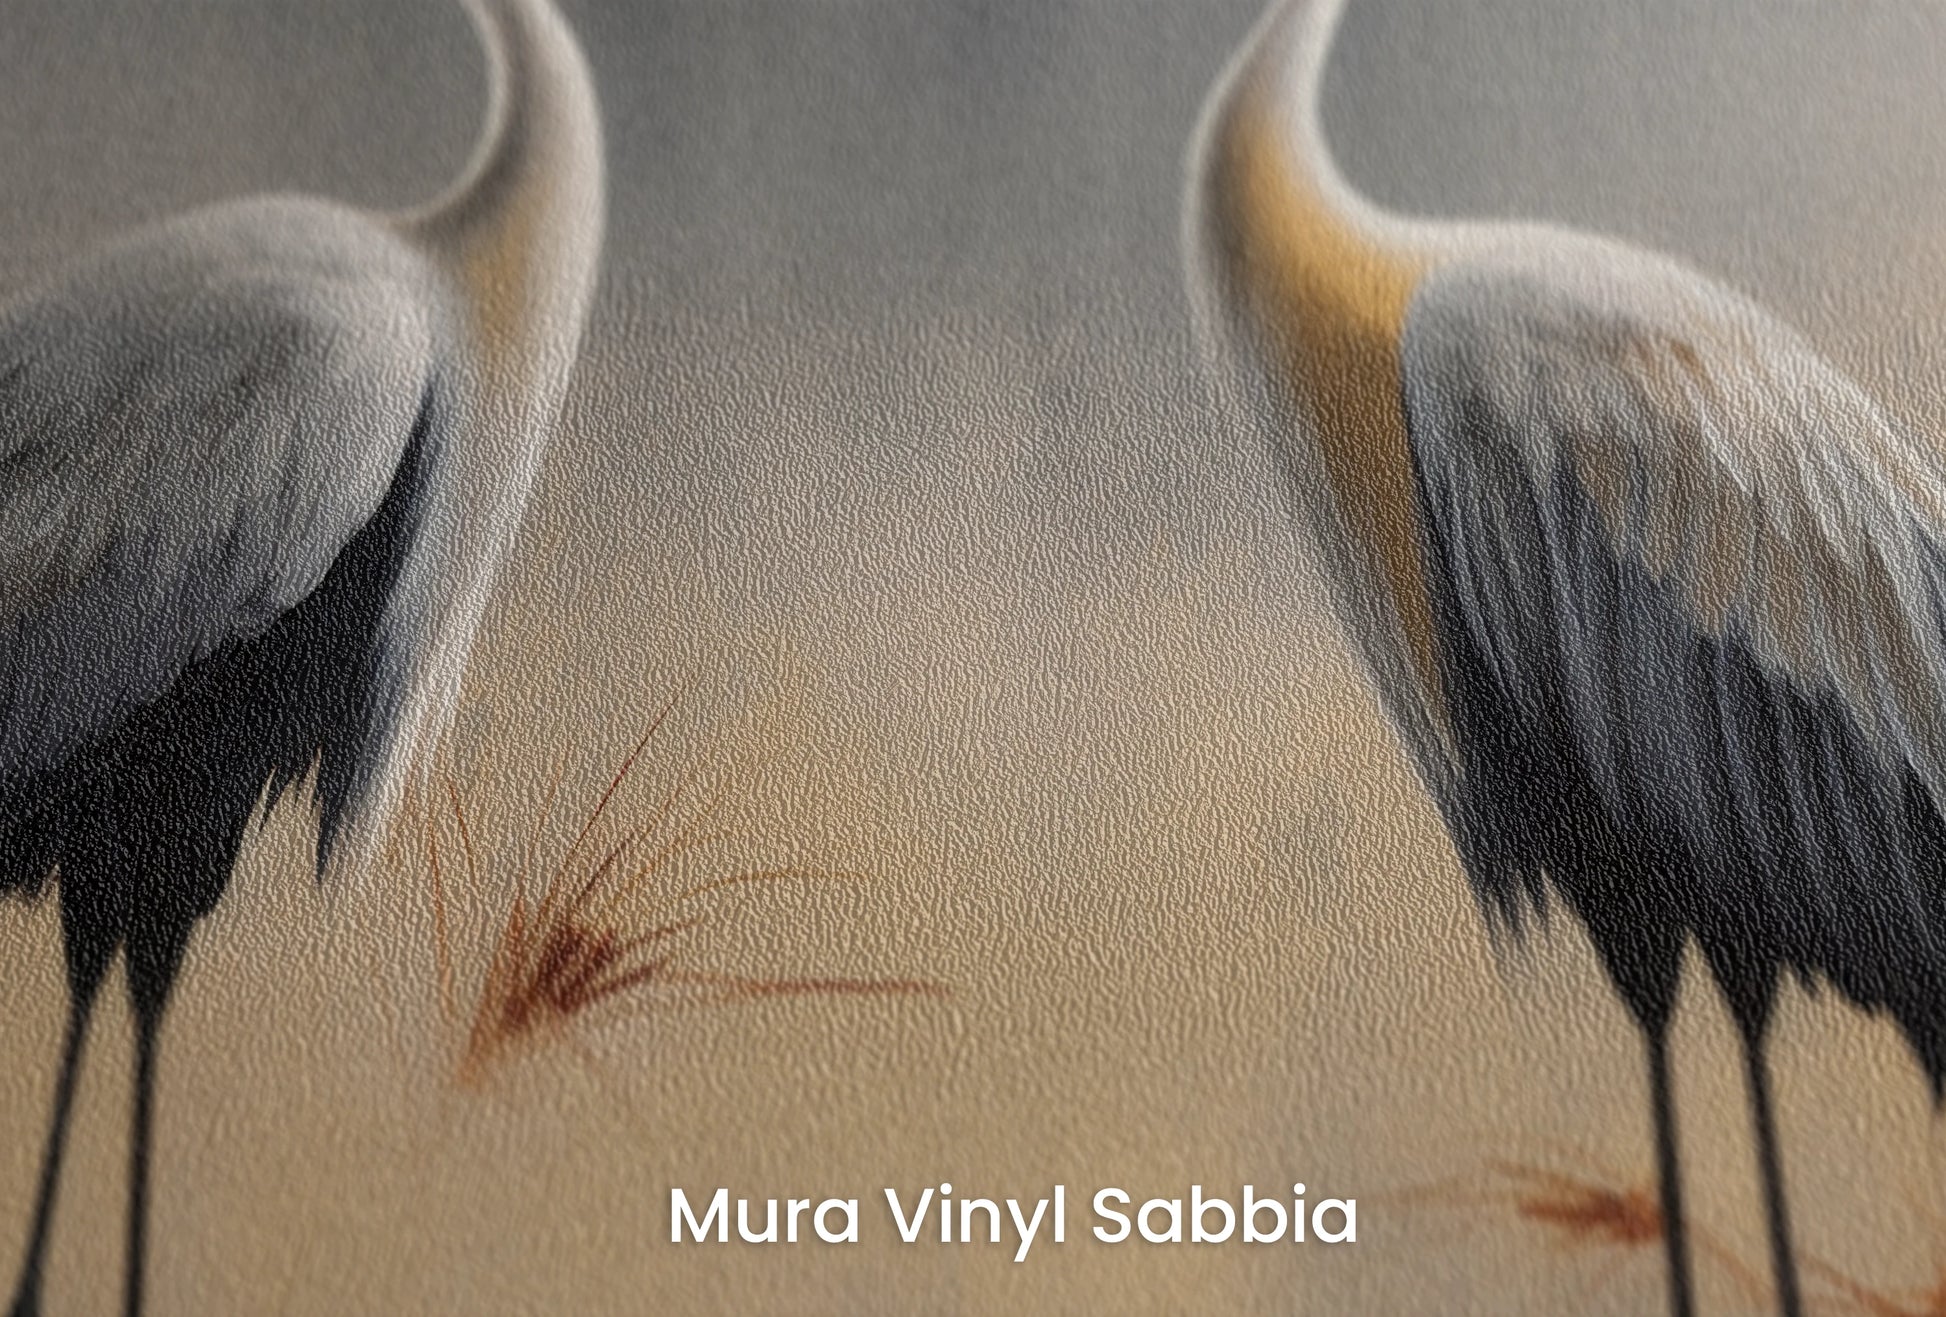 Zbliżenie na artystyczną fototapetę o nazwie Reflection of Dawn na podłożu Mura Vinyl Sabbia struktura grubego ziarna piasku.